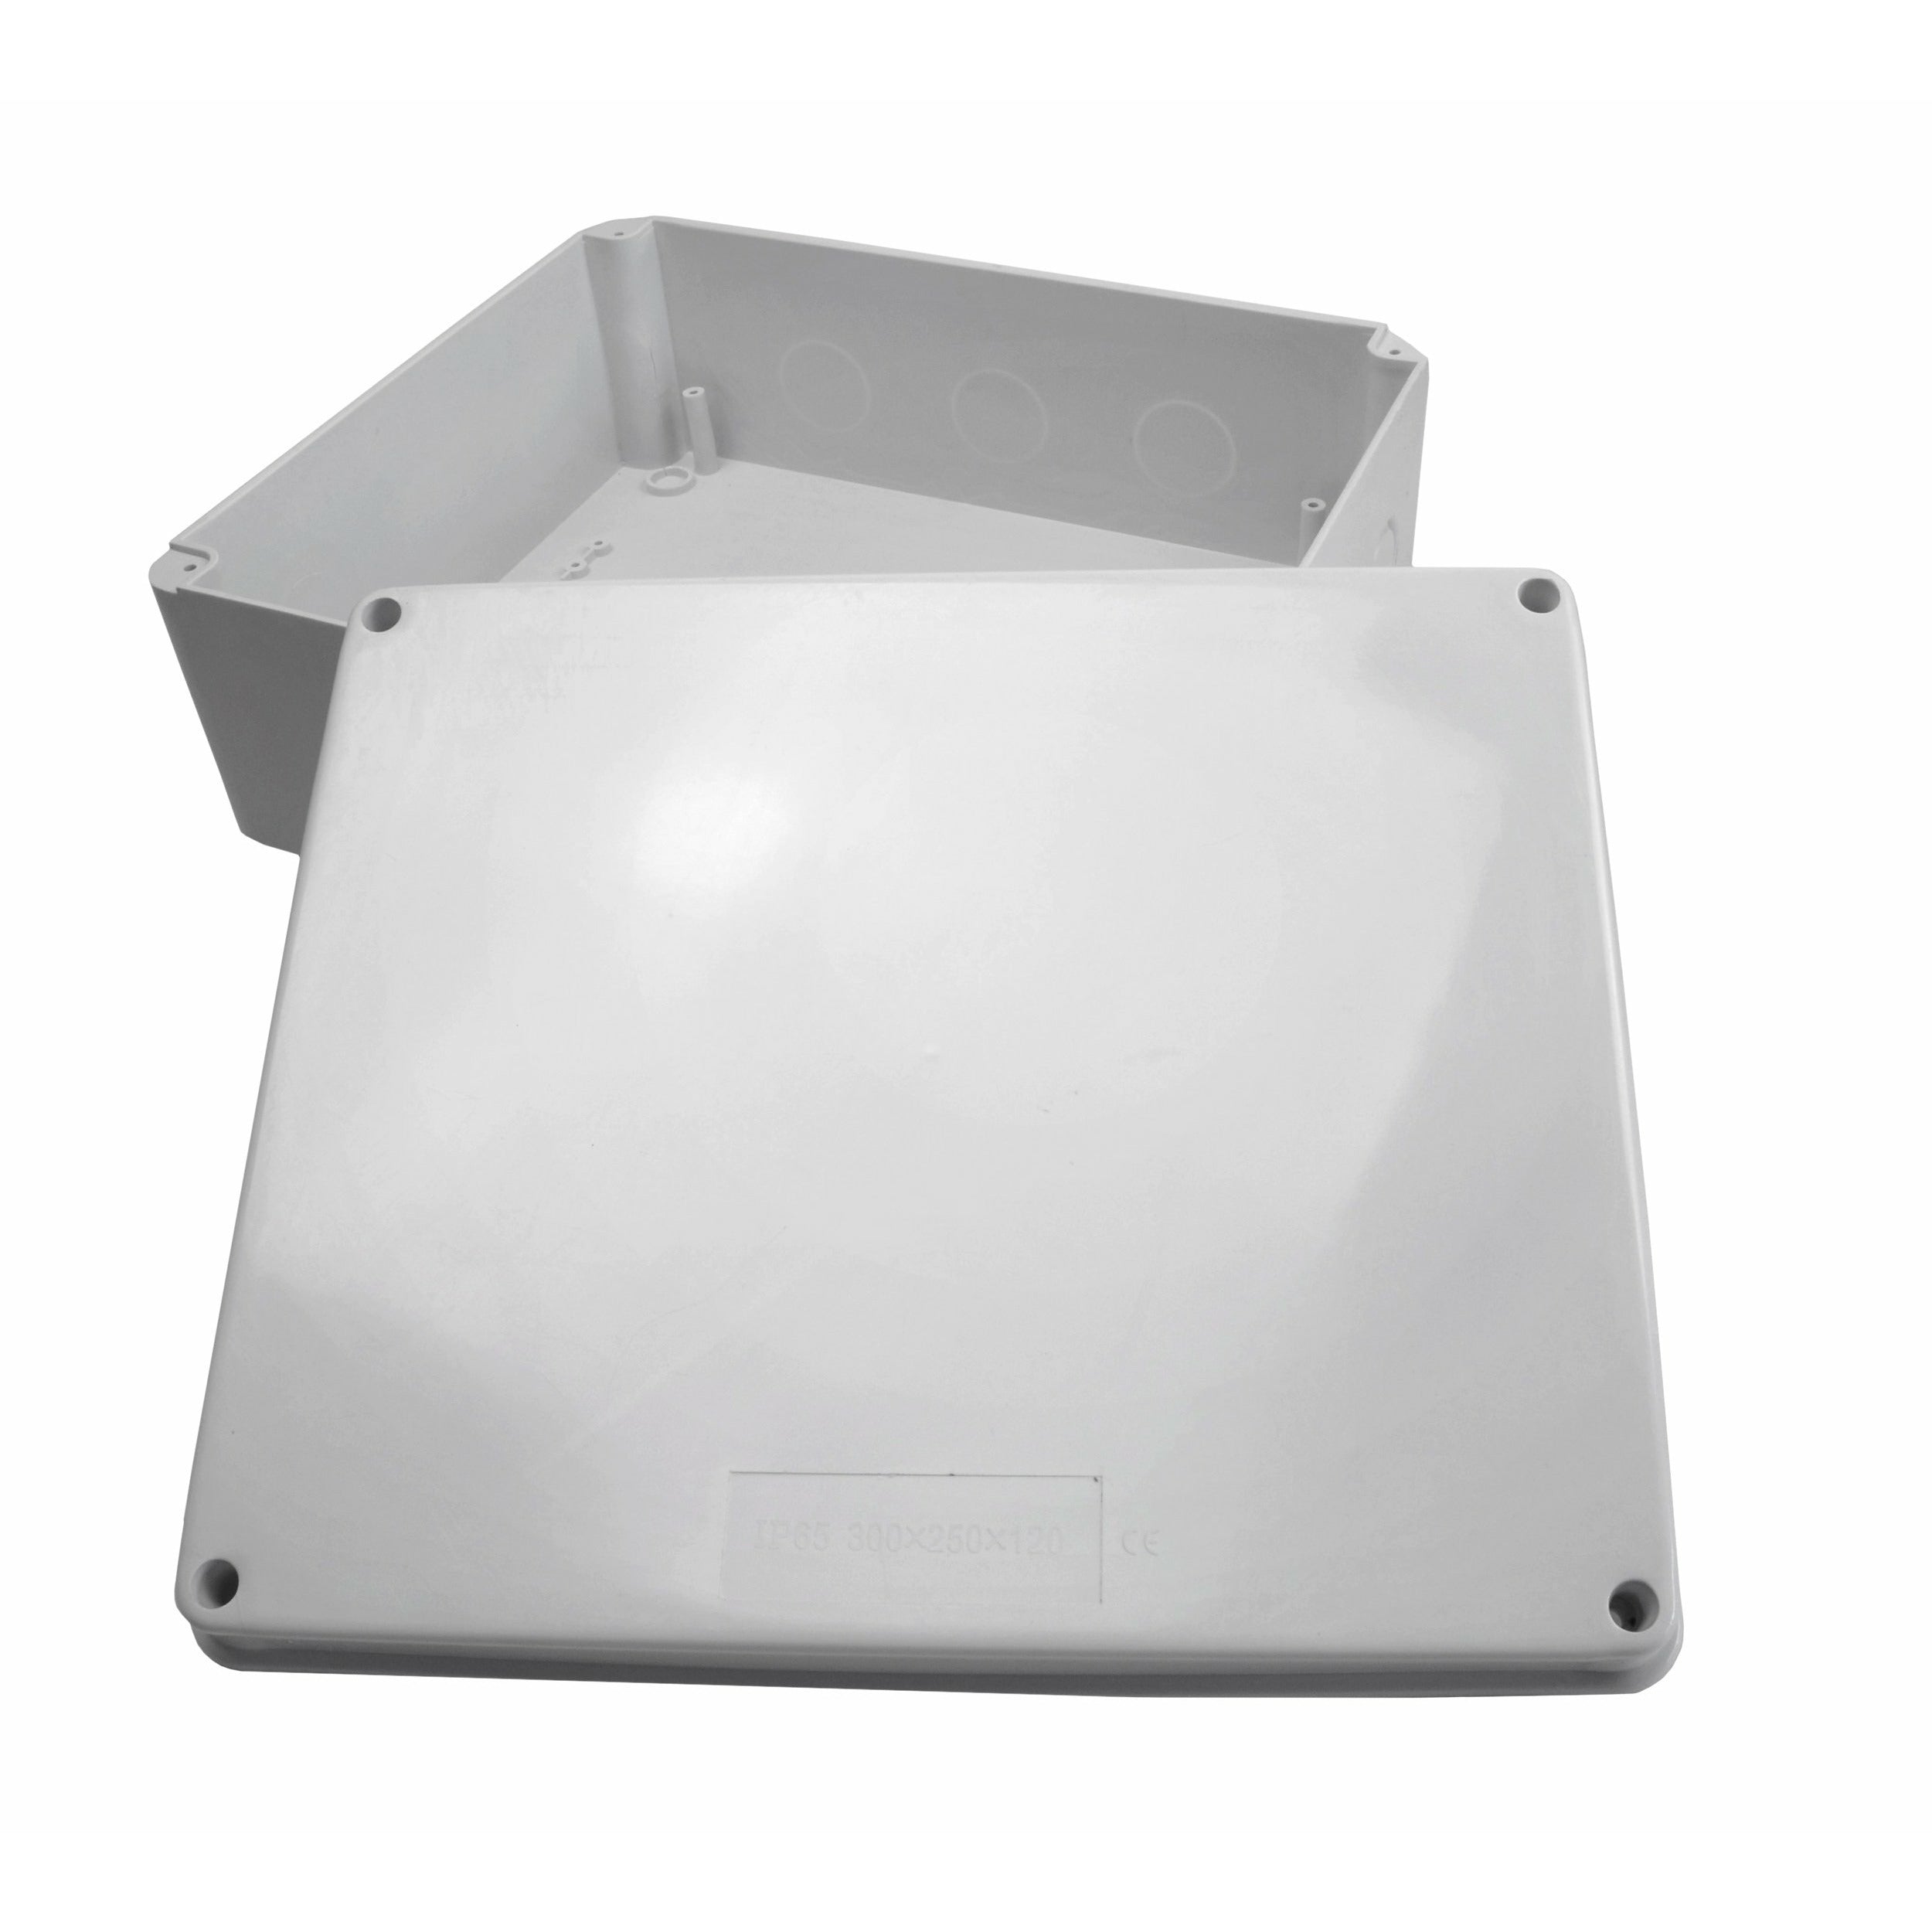 300x250x120 mm no grommet IP65 Waterproof Junction Box